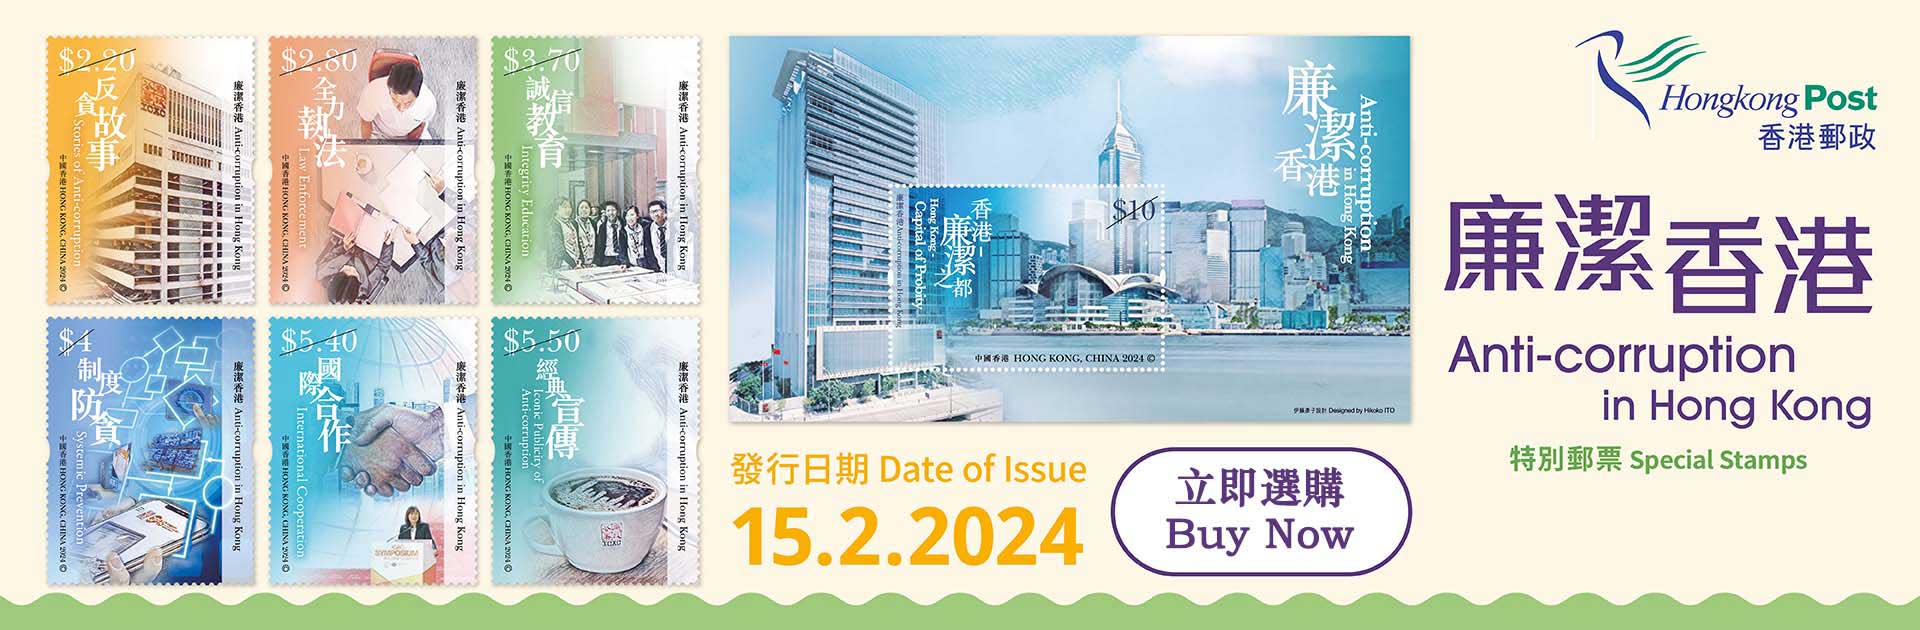 「廉洁香港」特别邮票